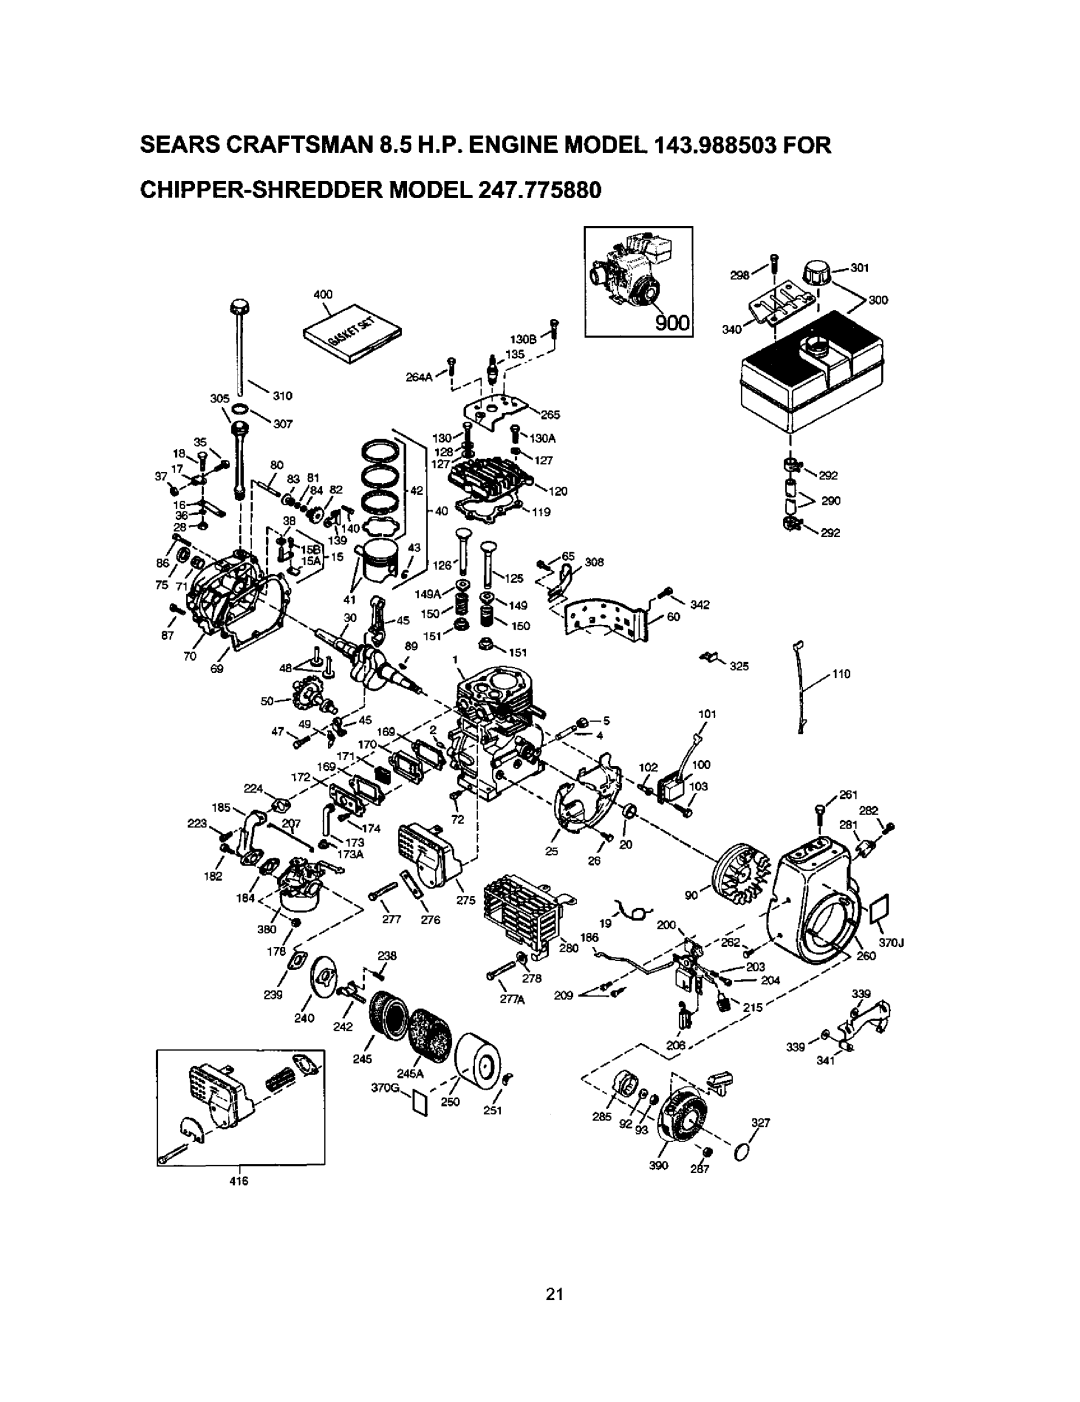 Craftsman 247.77588O owner manual Chipper-Shreddermodel, 4OO 3O5 35 2g0, 87 7O 